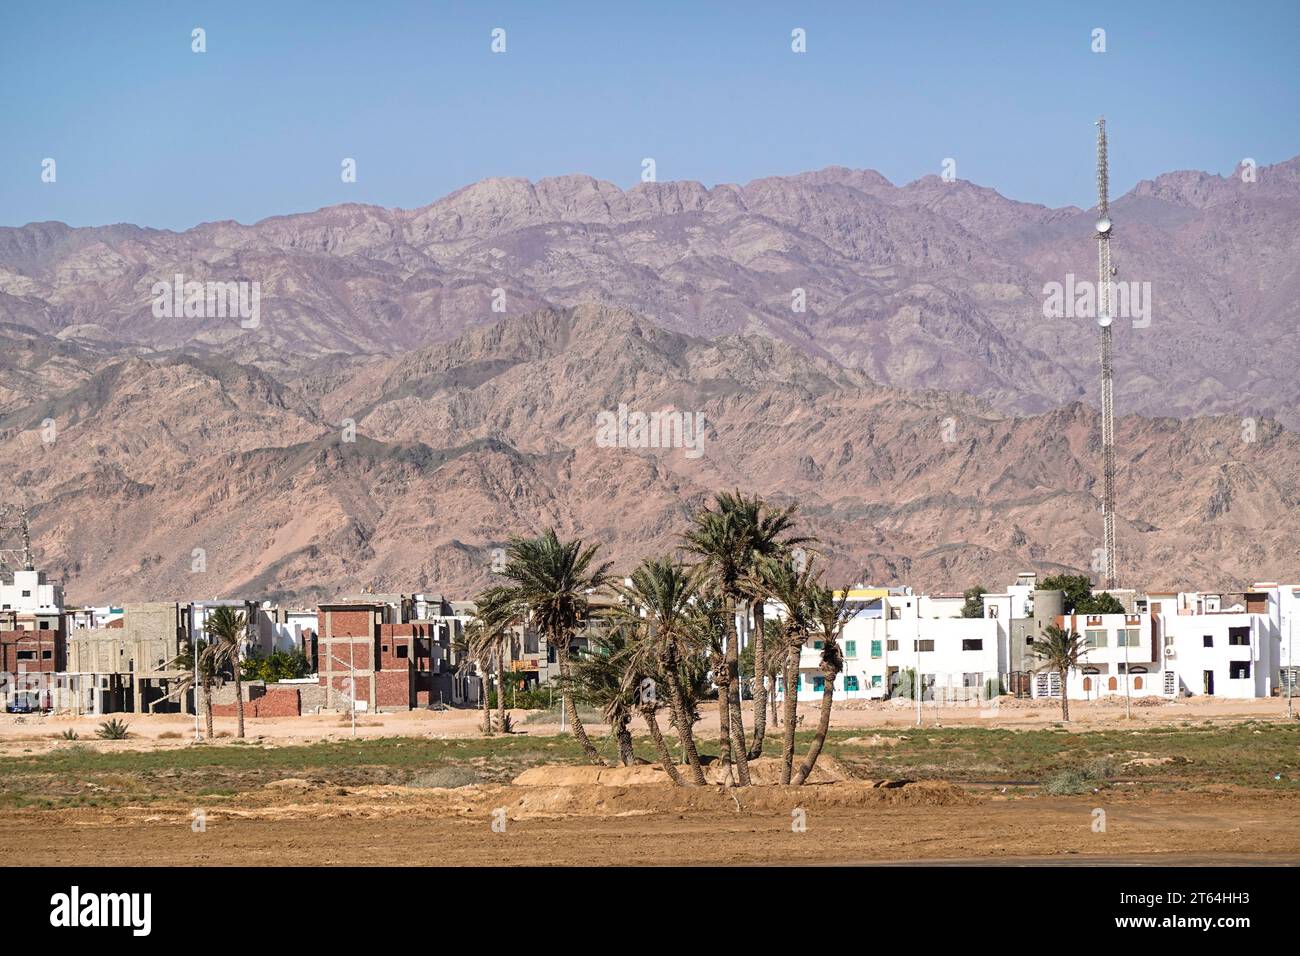 Neue moderne Wohnhäuser am Stadtrand, Dahab, Sinai, Ägypten Banque D'Images